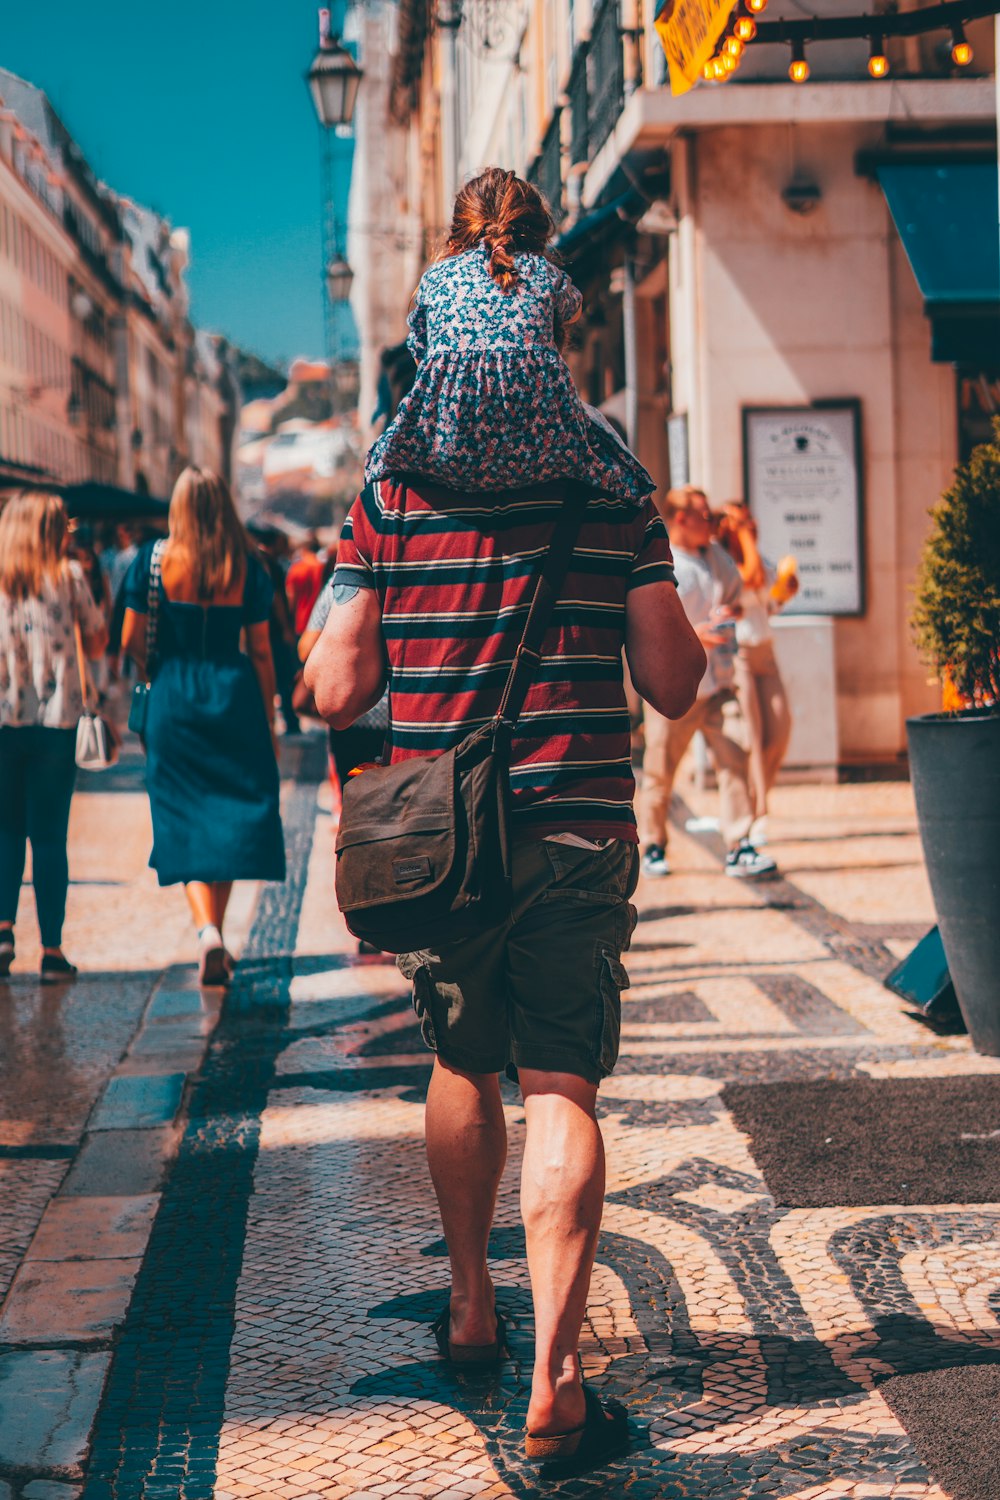 Foto Un hombre caminando por una calle con una mochila en la espalda –  Imagen Portugal gratis en Unsplash